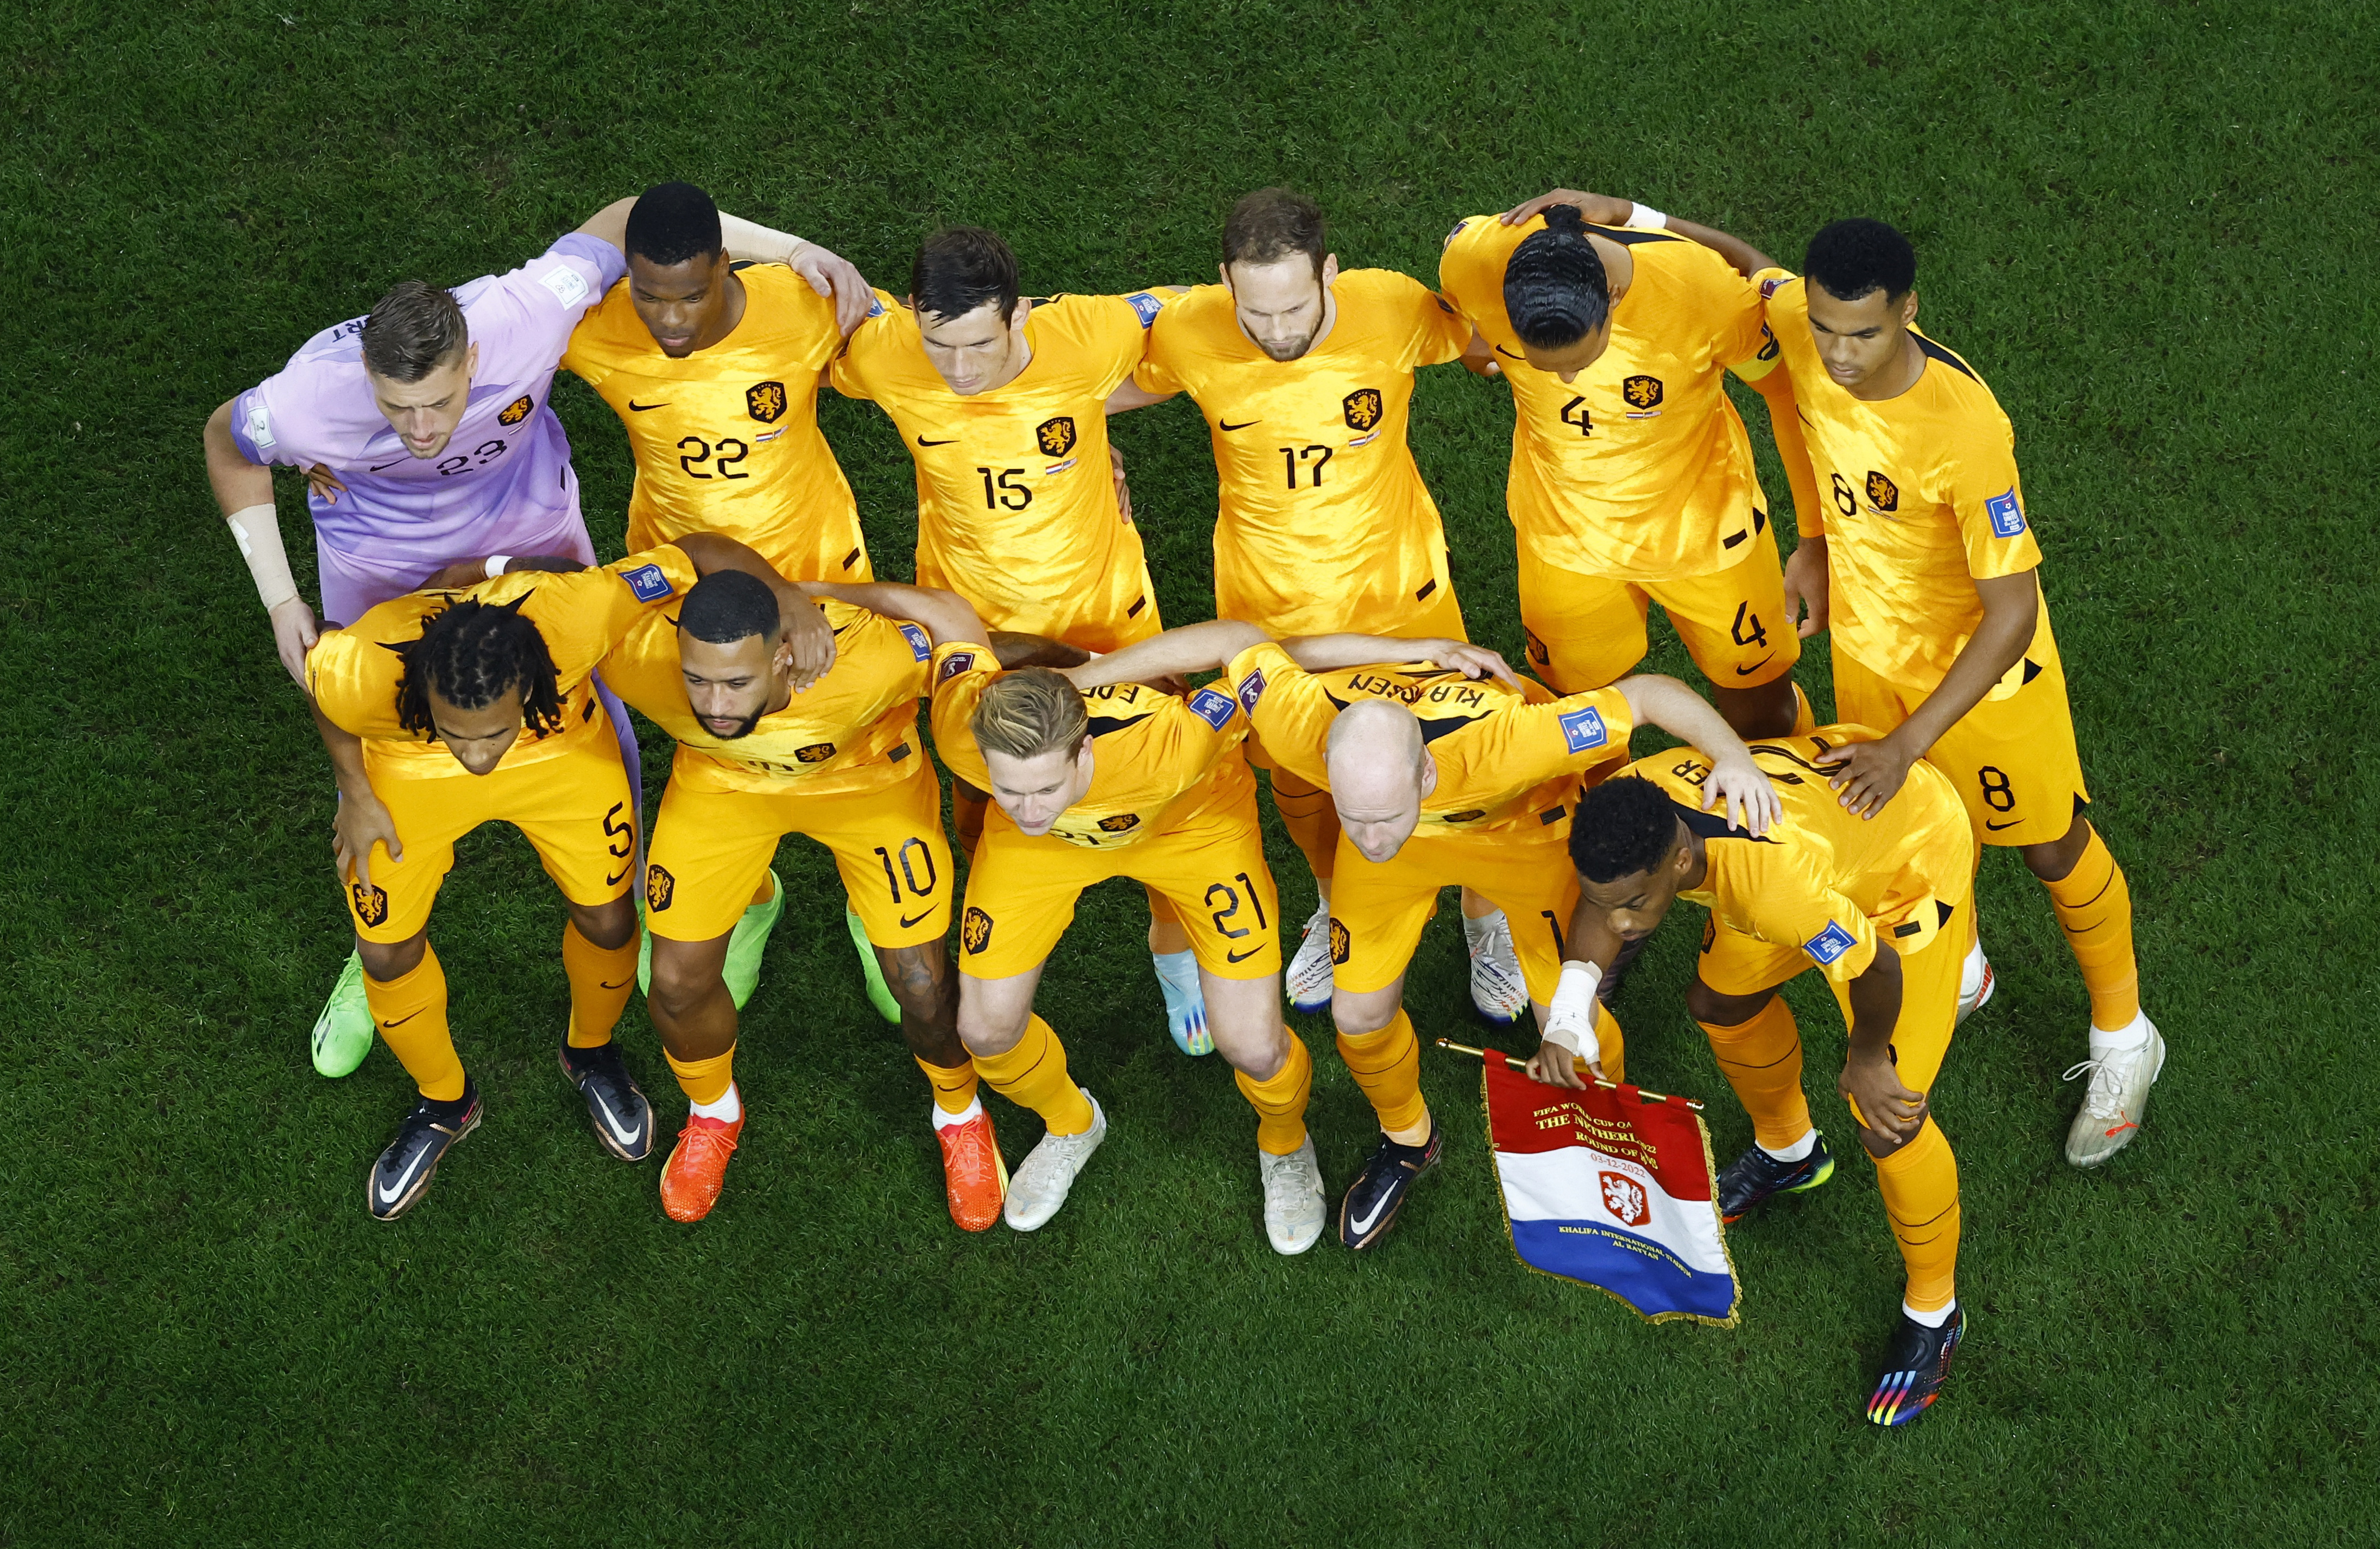 La selección neerlandesa también se llamó Países Bajos en la Eurocopa del año pasado (REUTERS/Peter Cziborra)